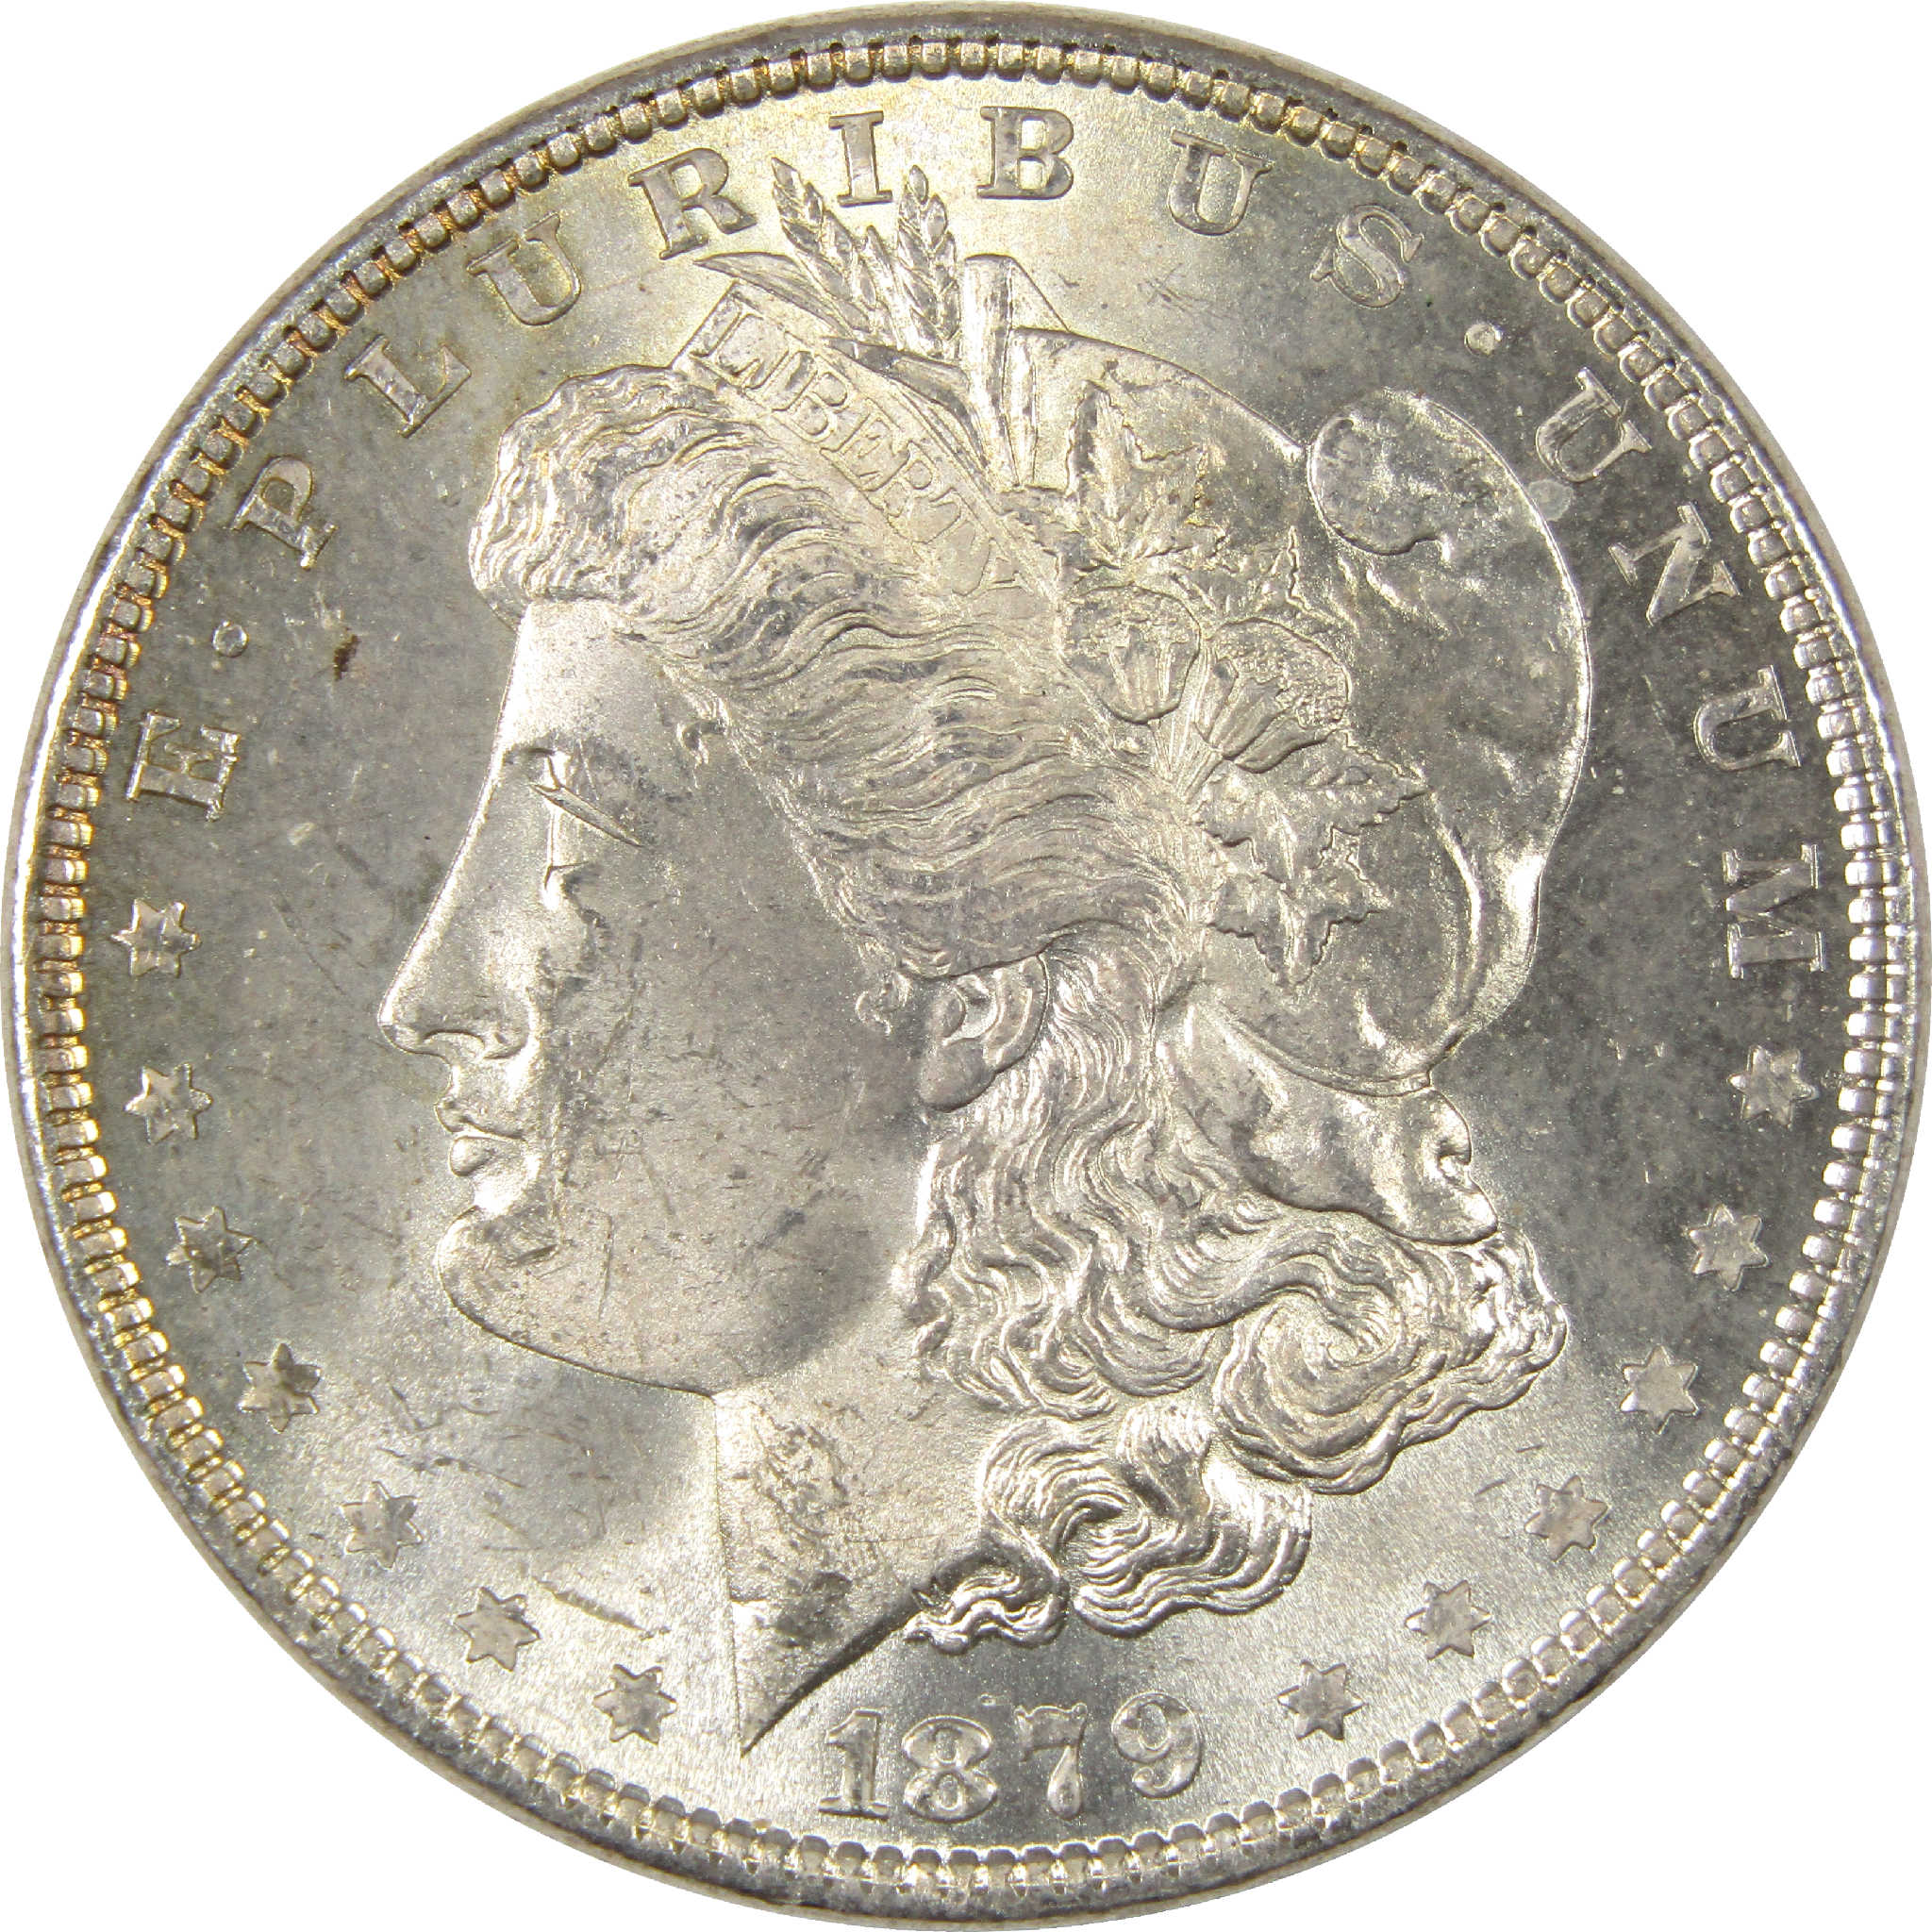 1879 Morgan Dollar Uncirculated Silver $1 Coin - Morgan coin - Morgan silver dollar - Morgan silver dollar for sale - Profile Coins &amp; Collectibles